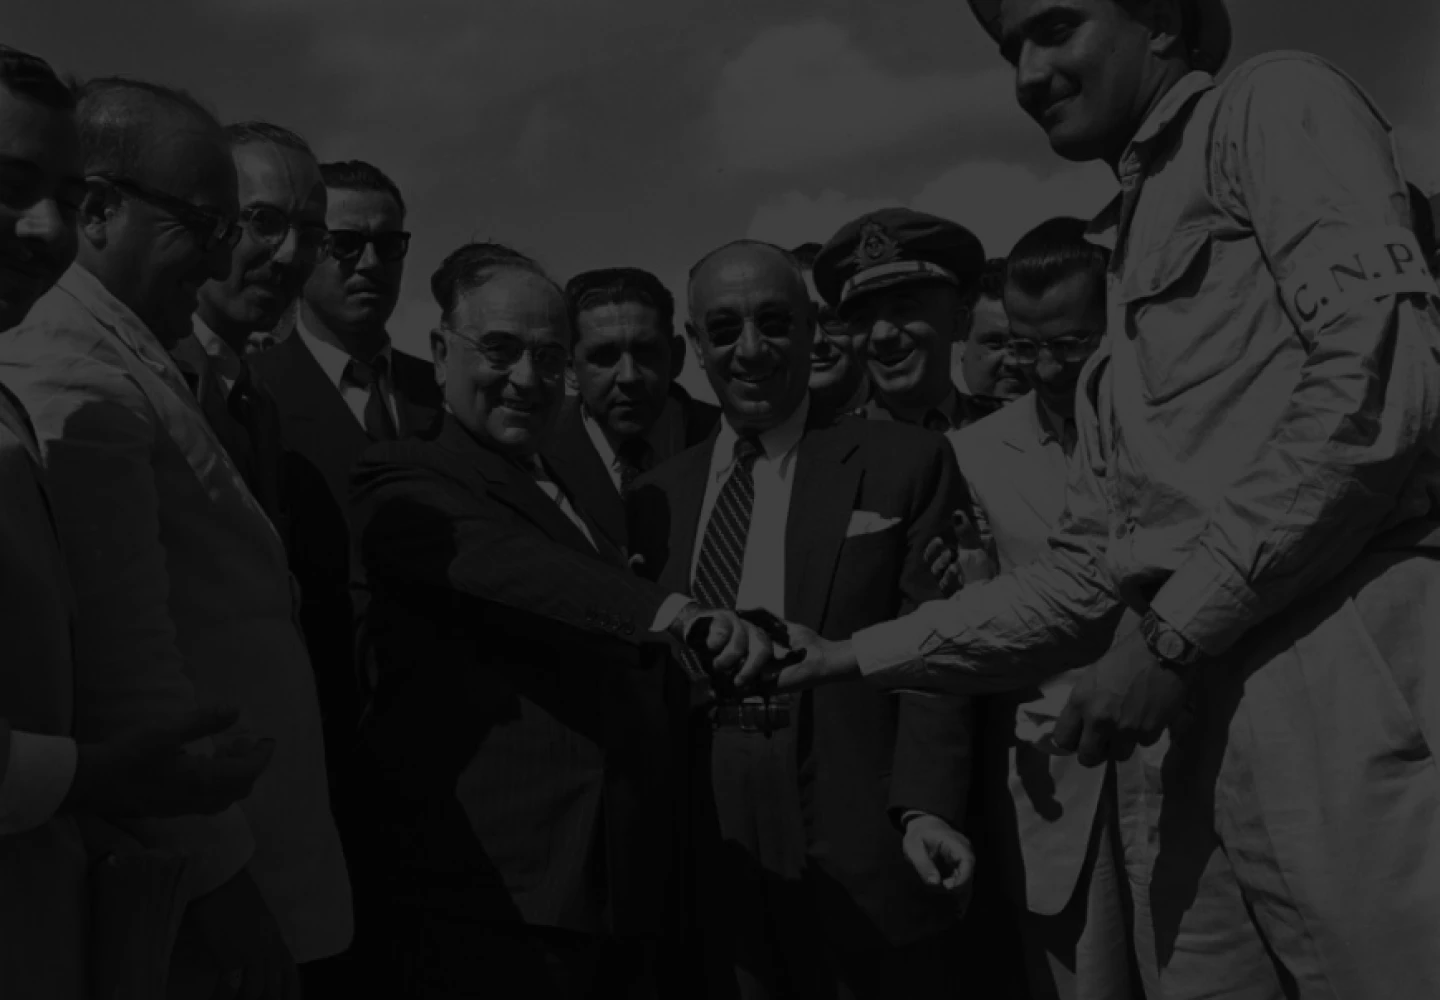 Fotografia em preto e branco da visita do então presidente Getulio Vargas a uma das operações da Petrobras.